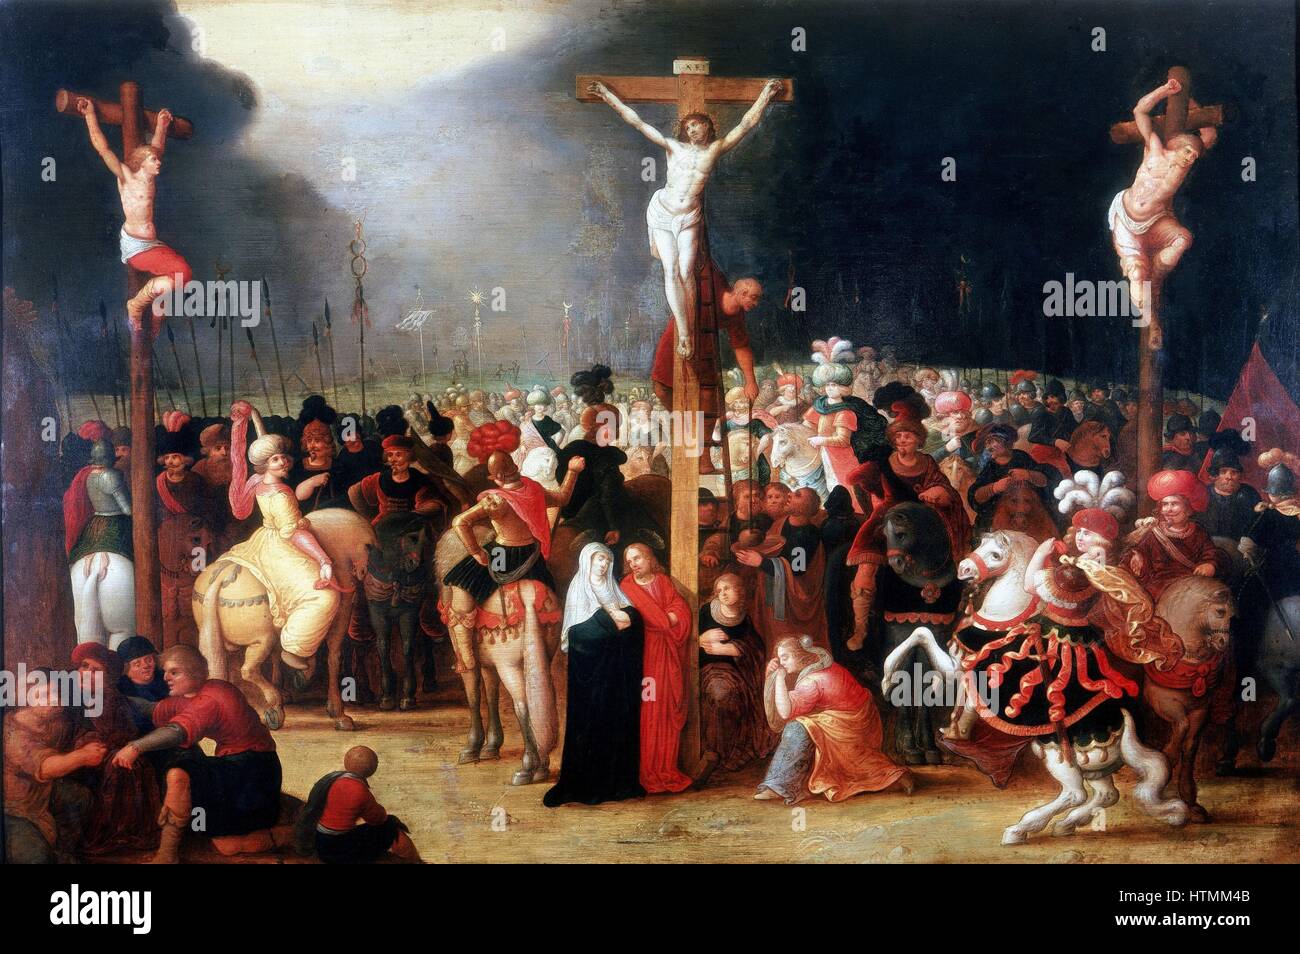 FRANCKEN, Frans, le jeune (1581-1642) peintre flamand. "Le Christ en croix entre les deux voleurs", huile sur bois. Au pied de la croix, la Vierge Marie avec l'Apôtre saint Jean, à gauche, et Mary Magdlene et Marie, femme de Clopas (droite). Musée des Banque D'Images